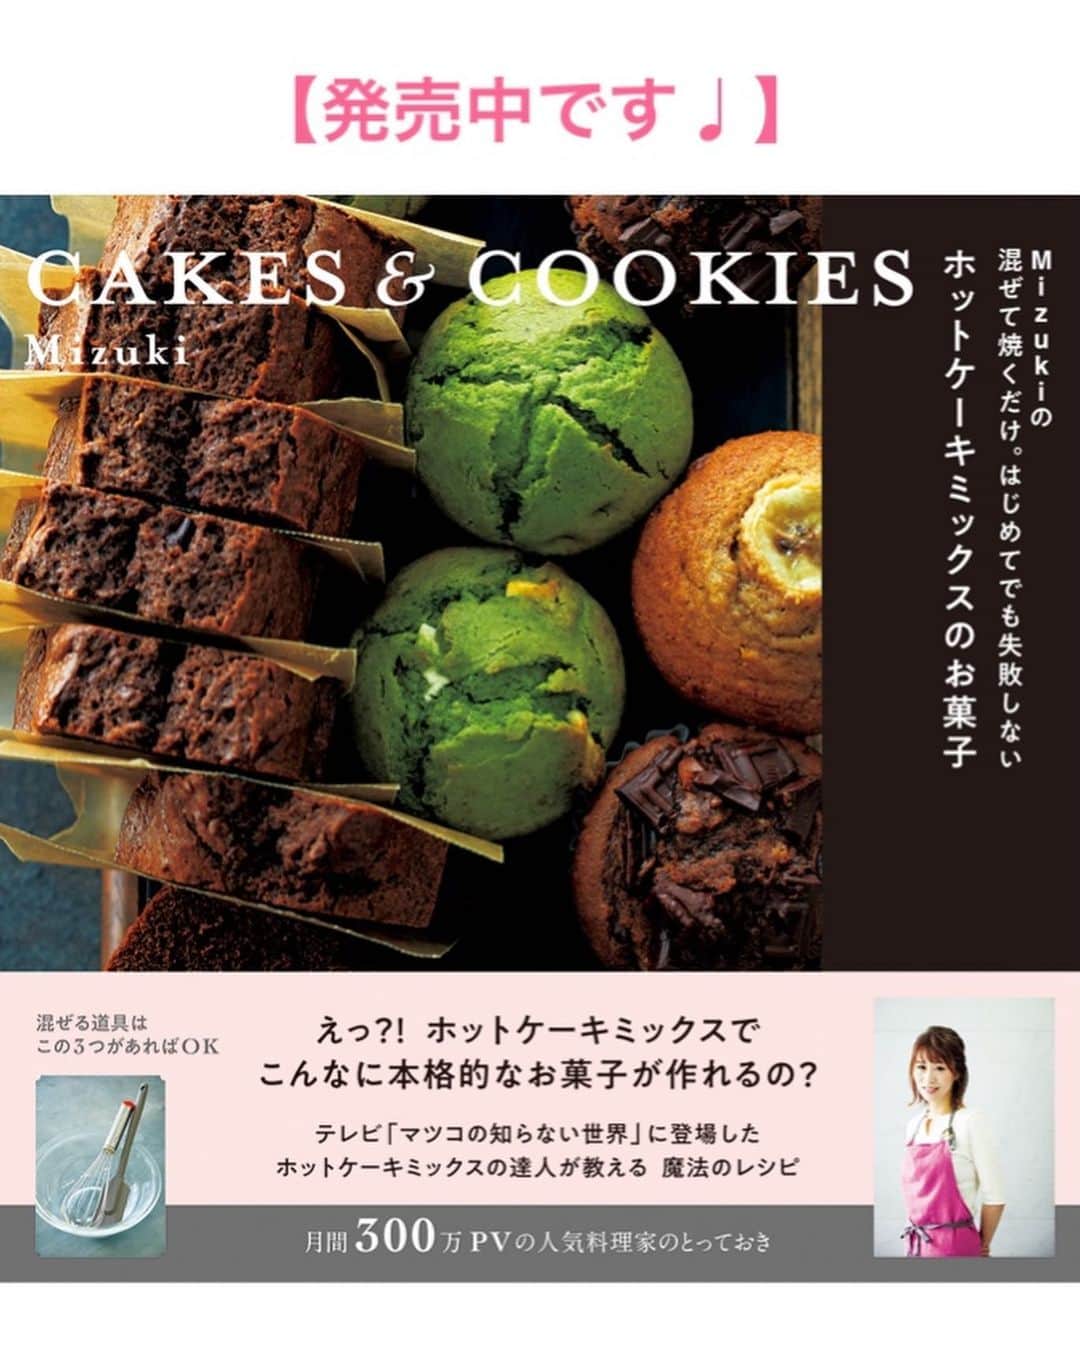 Mizuki【料理ブロガー・簡単レシピ】さんのインスタグラム写真 - (Mizuki【料理ブロガー・簡単レシピ】Instagram)「・﻿ 【レシピ】ーーーーーーーー﻿ ♡チョコ好きさんに捧ぐ♡﻿ メルティショコラ﻿ ーーーーーーーーーーーーー﻿ ﻿ ﻿ おはようございます(*^^*)﻿ ﻿ 今日ご紹介させていただくのは﻿ バレンタインにおすすめの﻿ チョコレートケーキ♩﻿ ﻿ ガトーショコラのような生地感と﻿ 生チョコのとろける食感を﻿ いいとこ取りしたメルティショコラ♡﻿ とろける食感でありながら常温で溶けず﻿ 持ち運びに気を使いません(*´艸`)﻿ ﻿ 作り方は超簡単♡♡﻿ 材料どんどん混ぜて焼くだけ！﻿ 材料は少なく工程も単純で﻿ 失敗なく作れますよ♩﻿ これとってもおすすめなので﻿ 是非お試し下さいね(*^^*)﻿ ﻿ ﻿ ーーーーーーーーーーーーーーーーーー﻿ 【18cmパウンド型】﻿ チョコレート(ブラック)...200g﻿ バター...50g﻿ 溶き卵...2個分﻿ 生クリーム...100ml﻿ ●薄力粉・ココアパウダー...各大1.5﻿ ﻿ ﻿ ［準備］﻿ チョコとバターは細かく刻む。﻿ 薄力粉とココアは合わせてふるっておく。﻿ 湯煎用のお湯を沸かしておく。﻿ 型にシートを敷く。﻿ オーブンを180度に予熱する。﻿ ﻿ 1.ボウルにチョコとバターを入れ、湯煎にかけて溶かす。(先に軽くレンチンしておくと早く溶けます♩)﻿ 2.(湯煎にかけたまま)溶き卵を少しずつ加えてその都度よく混ぜ、続けて生クリームも加えて混ぜる。最後にふるった●を加えてよく混ぜる。﻿ 3.型に注ぎ、予熱したオーブンで22〜23分焼く。焼けたらアミに乗せて冷まし、型に入れたまま冷蔵庫で一晩以上冷やす。﻿ ーーーーーーーーーーーーーーーーーー﻿ ﻿ ﻿ 《ポイント》﻿ ♦︎チョコレートは板チョコでOK、バターは無塩でも有塩でもOK♩﻿ ♦︎生地作りは終始湯煎にかけたまま行って下さい♩﻿ ♦︎冷蔵庫で5日は保存可能です♩プレゼントする際は2〜3日早く作っておくと◎﻿ ♦︎カットする時は温めたナイフで♩熱湯で温めたナイフでゆっくりカットすると、写真のように真ん中がとろけます♩﻿ ﻿ ﻿ ﻿ ＿＿＿＿＿＿＿＿＿＿＿＿＿＿＿＿＿﻿ ＿＿＿＿＿＿＿＿＿＿＿＿＿＿＿＿＿﻿ 🎀新刊発売中🎀﻿ 【#ホットケーキミックスのお菓子 】﻿ ﻿ 今回は一冊まるっとホケミスイーツ♩﻿ 普段のおやつから﻿ 特別な日にも使えるレシピを﻿ この一冊に詰め込みました(*^^*)﻿ ホットケーキミックスを使えば﻿ 簡単に本格的なお菓子が作れますよ♡﻿ バレンタインにもご活用下さいませ♩﻿ ﻿ 🔹ハイライトにリンクあります♩🔹﻿ ＿＿＿＿＿＿＿＿＿＿＿＿＿＿＿＿＿﻿ ＿＿＿＿＿＿＿＿＿＿＿＿＿＿＿＿＿﻿ ﻿ ﻿ ﻿ 【お知らせ】﻿ ストーリーズでは一日数回﻿ 別レシピをご紹介しております(*^^*)﻿ ＊コメントは最新の投稿に下さいますよう﻿ お願い致しますm(_ _)m﻿ ﻿ ﻿ ﻿ #ブログ更新しました﻿ ブログはプロフ画面のリンクよりご覧下さい↓﻿ @mizuki_31cafe﻿ 【Mizuki公式ラインブログ】﻿ https://lineblog.me/mizuki_official/﻿ ﻿ ﻿ ﻿ ﻿ #バレンタイン#チョコレートケーキ#スイーツ#チョコ#プレゼント#メルティショコラ﻿ #Mizuki#簡単レシピ#時短レシピ#節約レシピ#料理#レシピ#フーディーテーブル#おうちごはん#おうちカフェ#デリスタグラマー#料理好きな人と繋がりたい#料理ブロガー#おうちごはんlover#器#マカロニメイト#ブログ﻿ #foodpic#follow#cooking#recipe#lin_stagrammer#メルティショコラm」1月27日 6時59分 - mizuki_31cafe